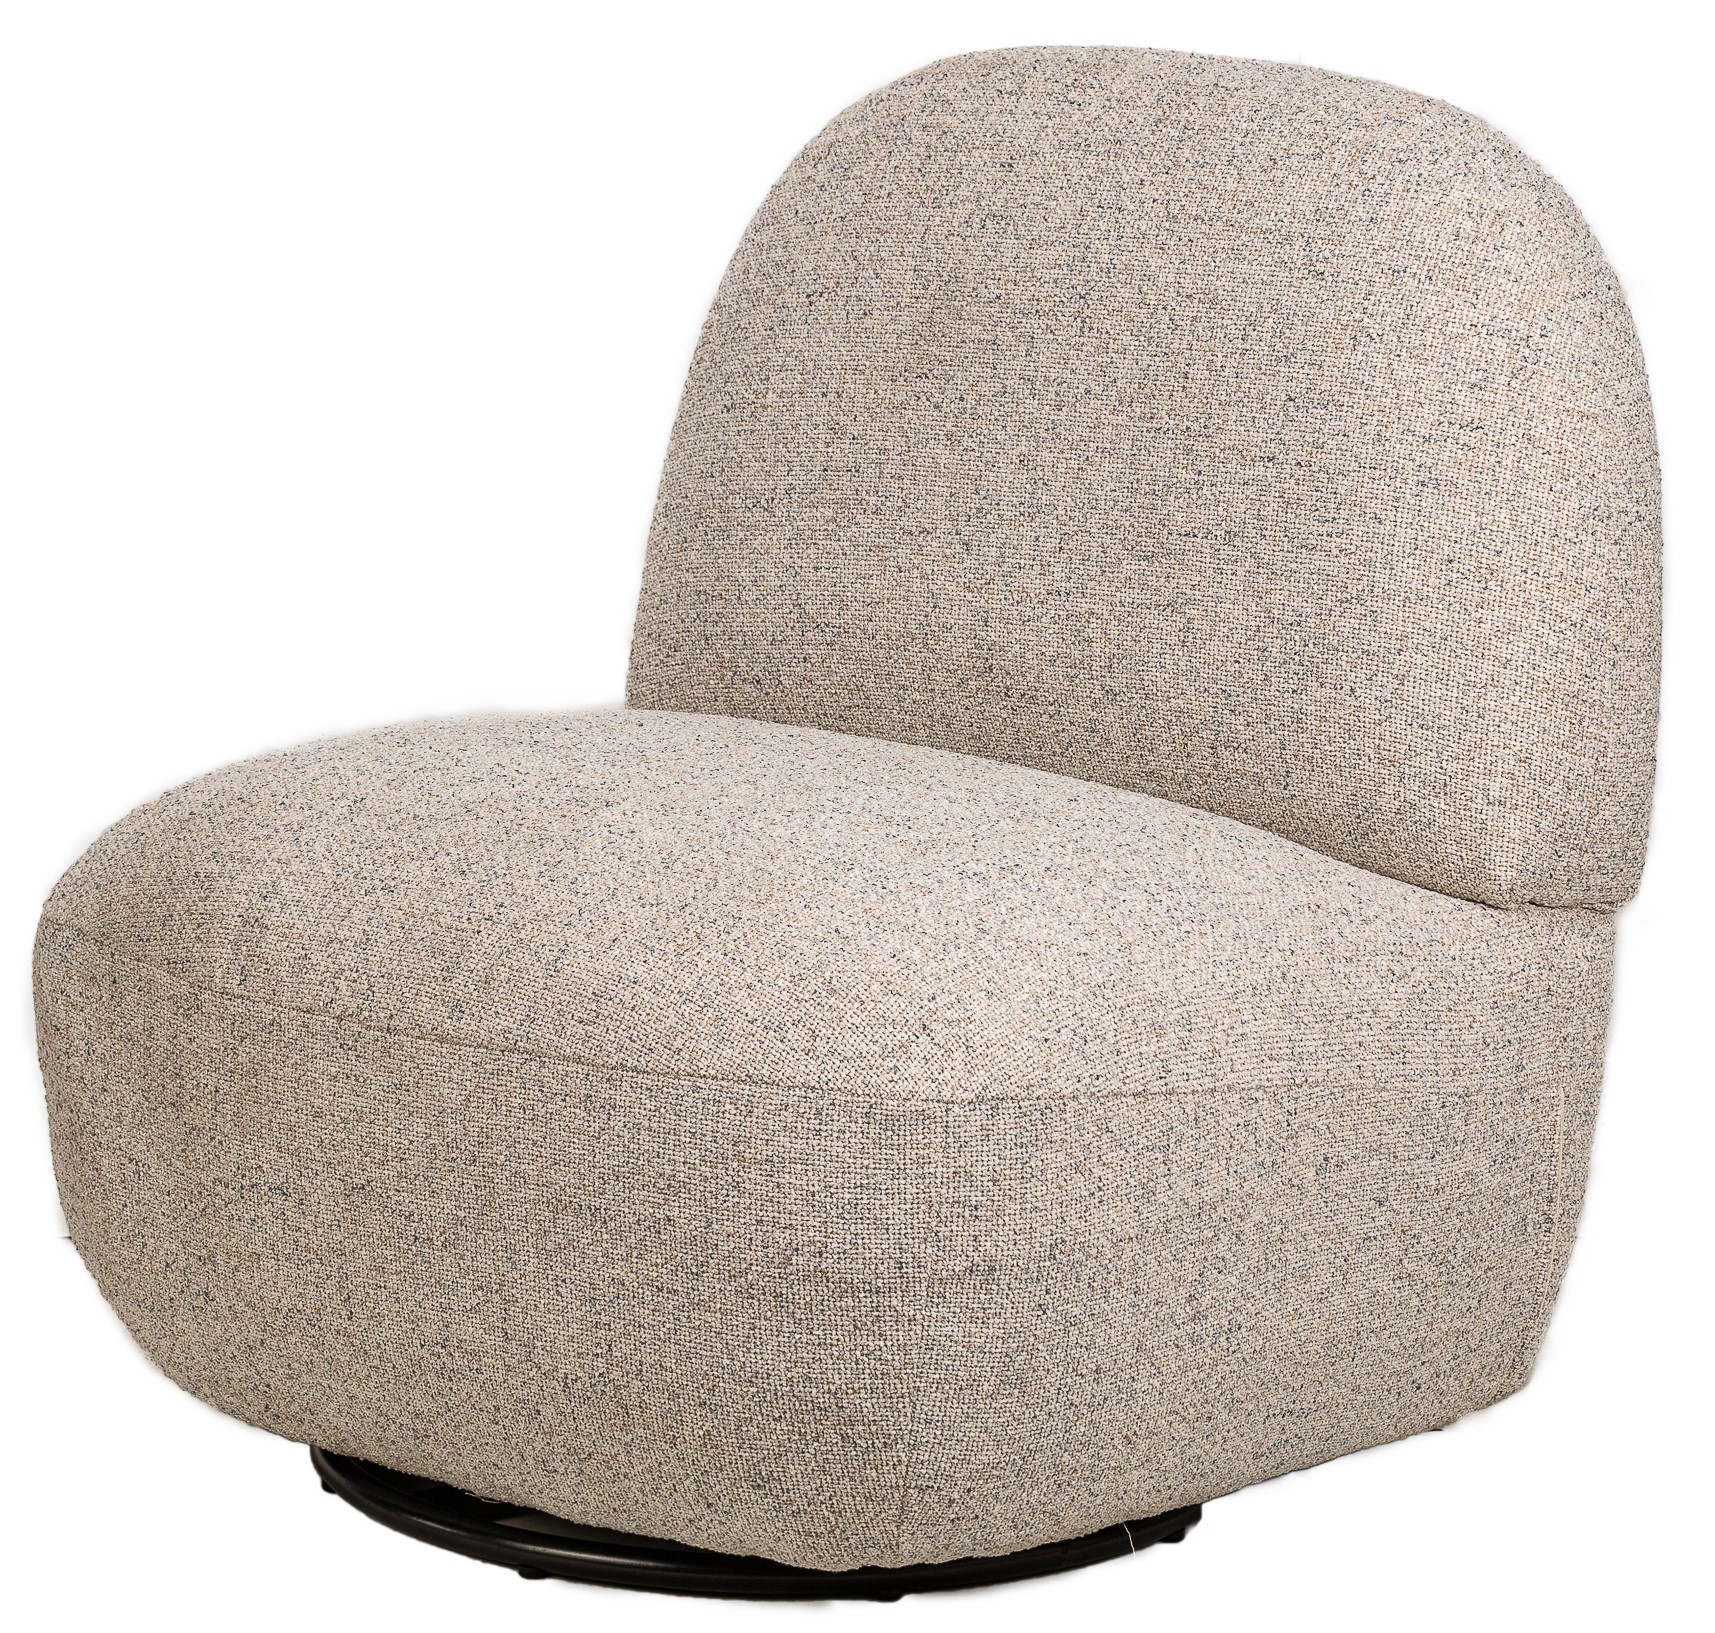 fauteuil de salon pivotant en tissu gris